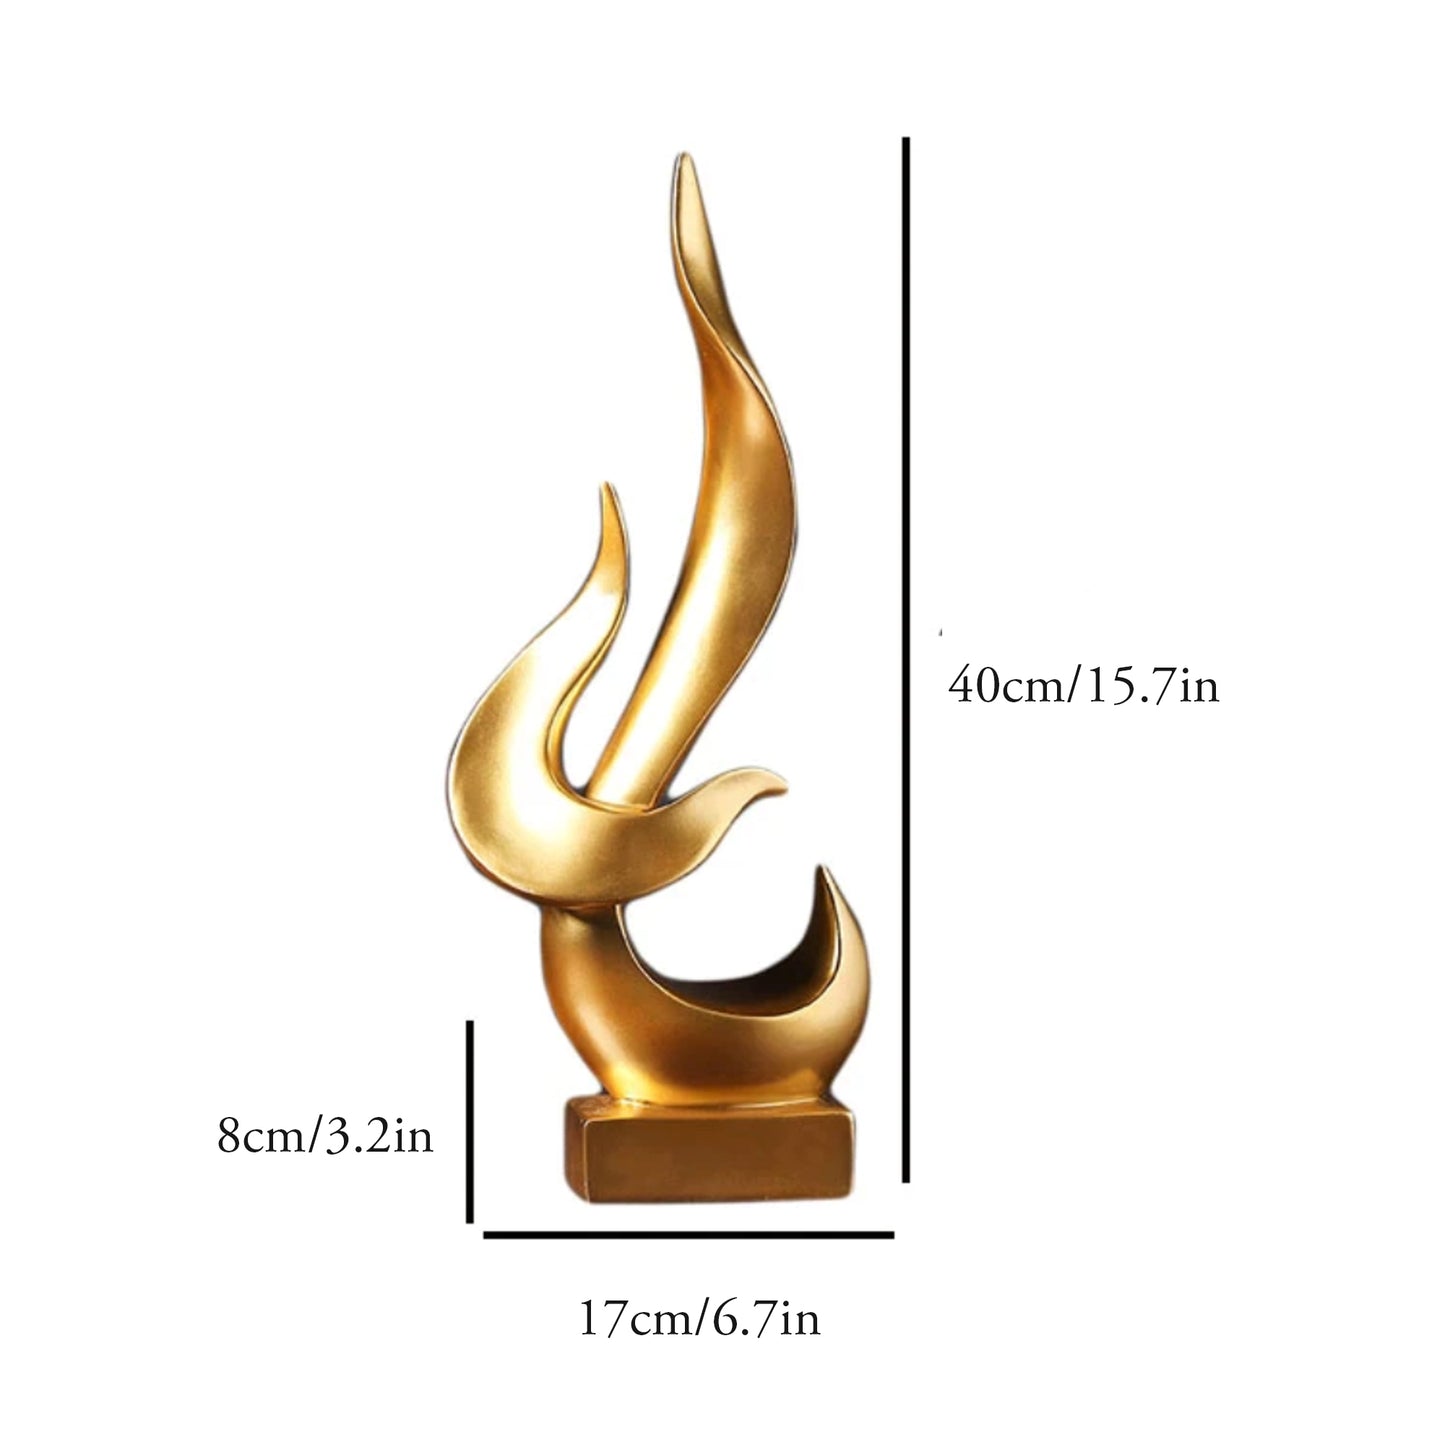 Golden Flame Sculpture